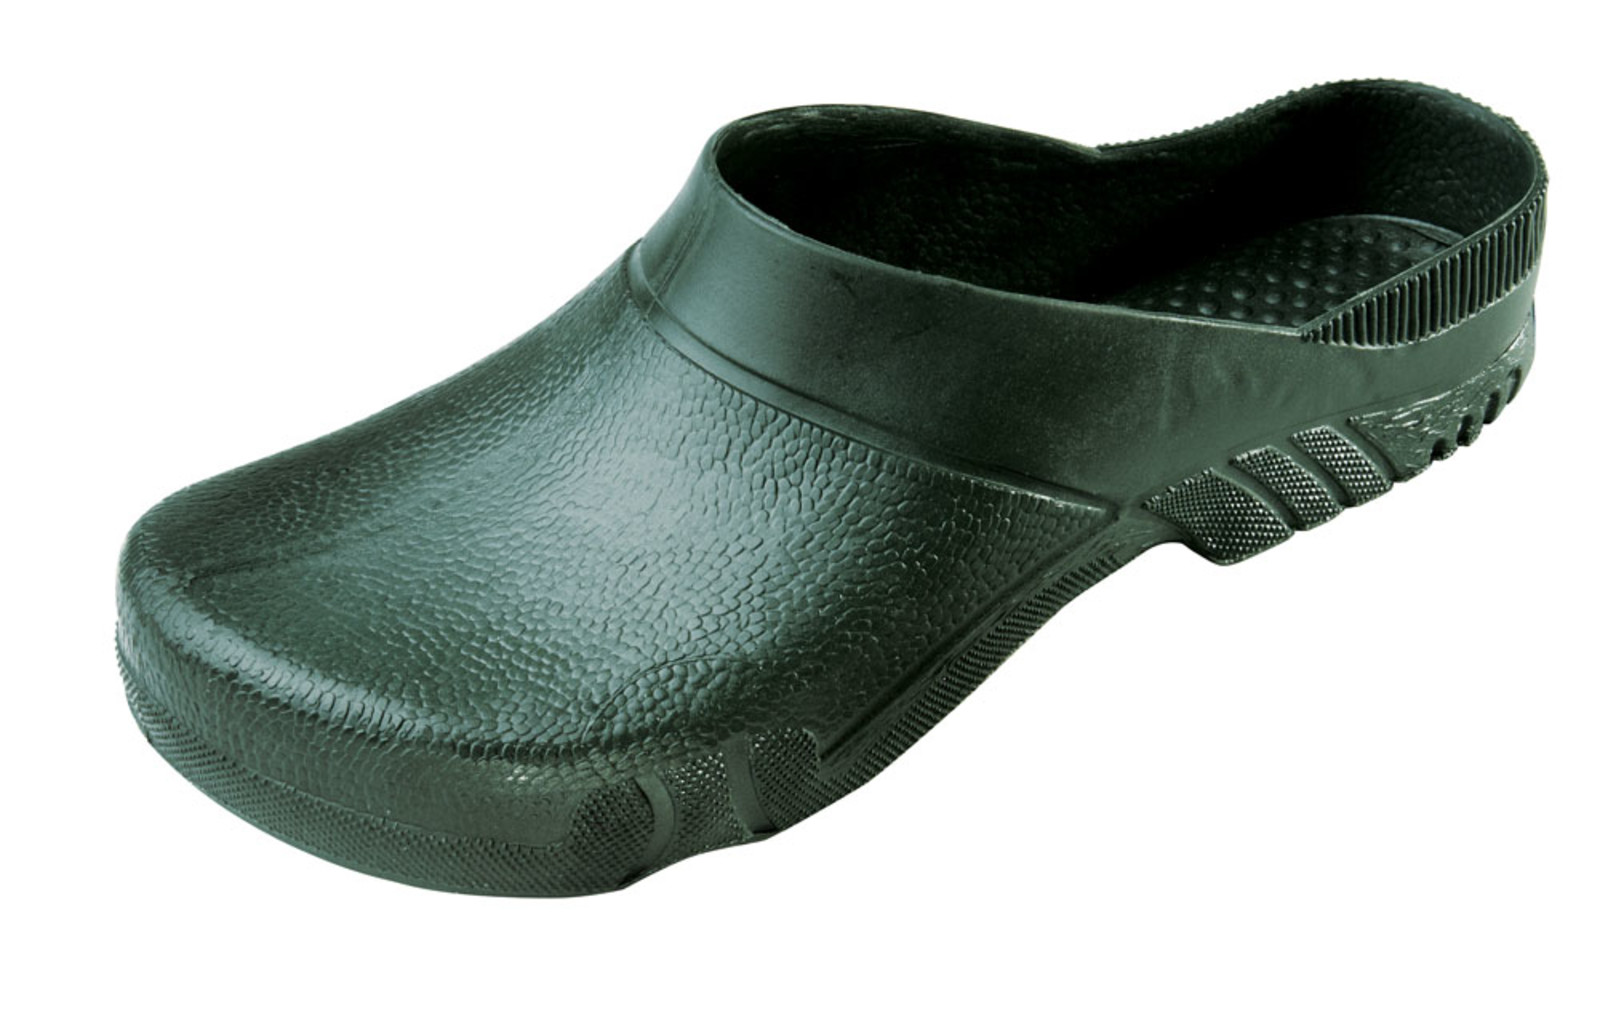 Galoše Boots Birba  - veľkosť: 47-48, farba: olivová zelená